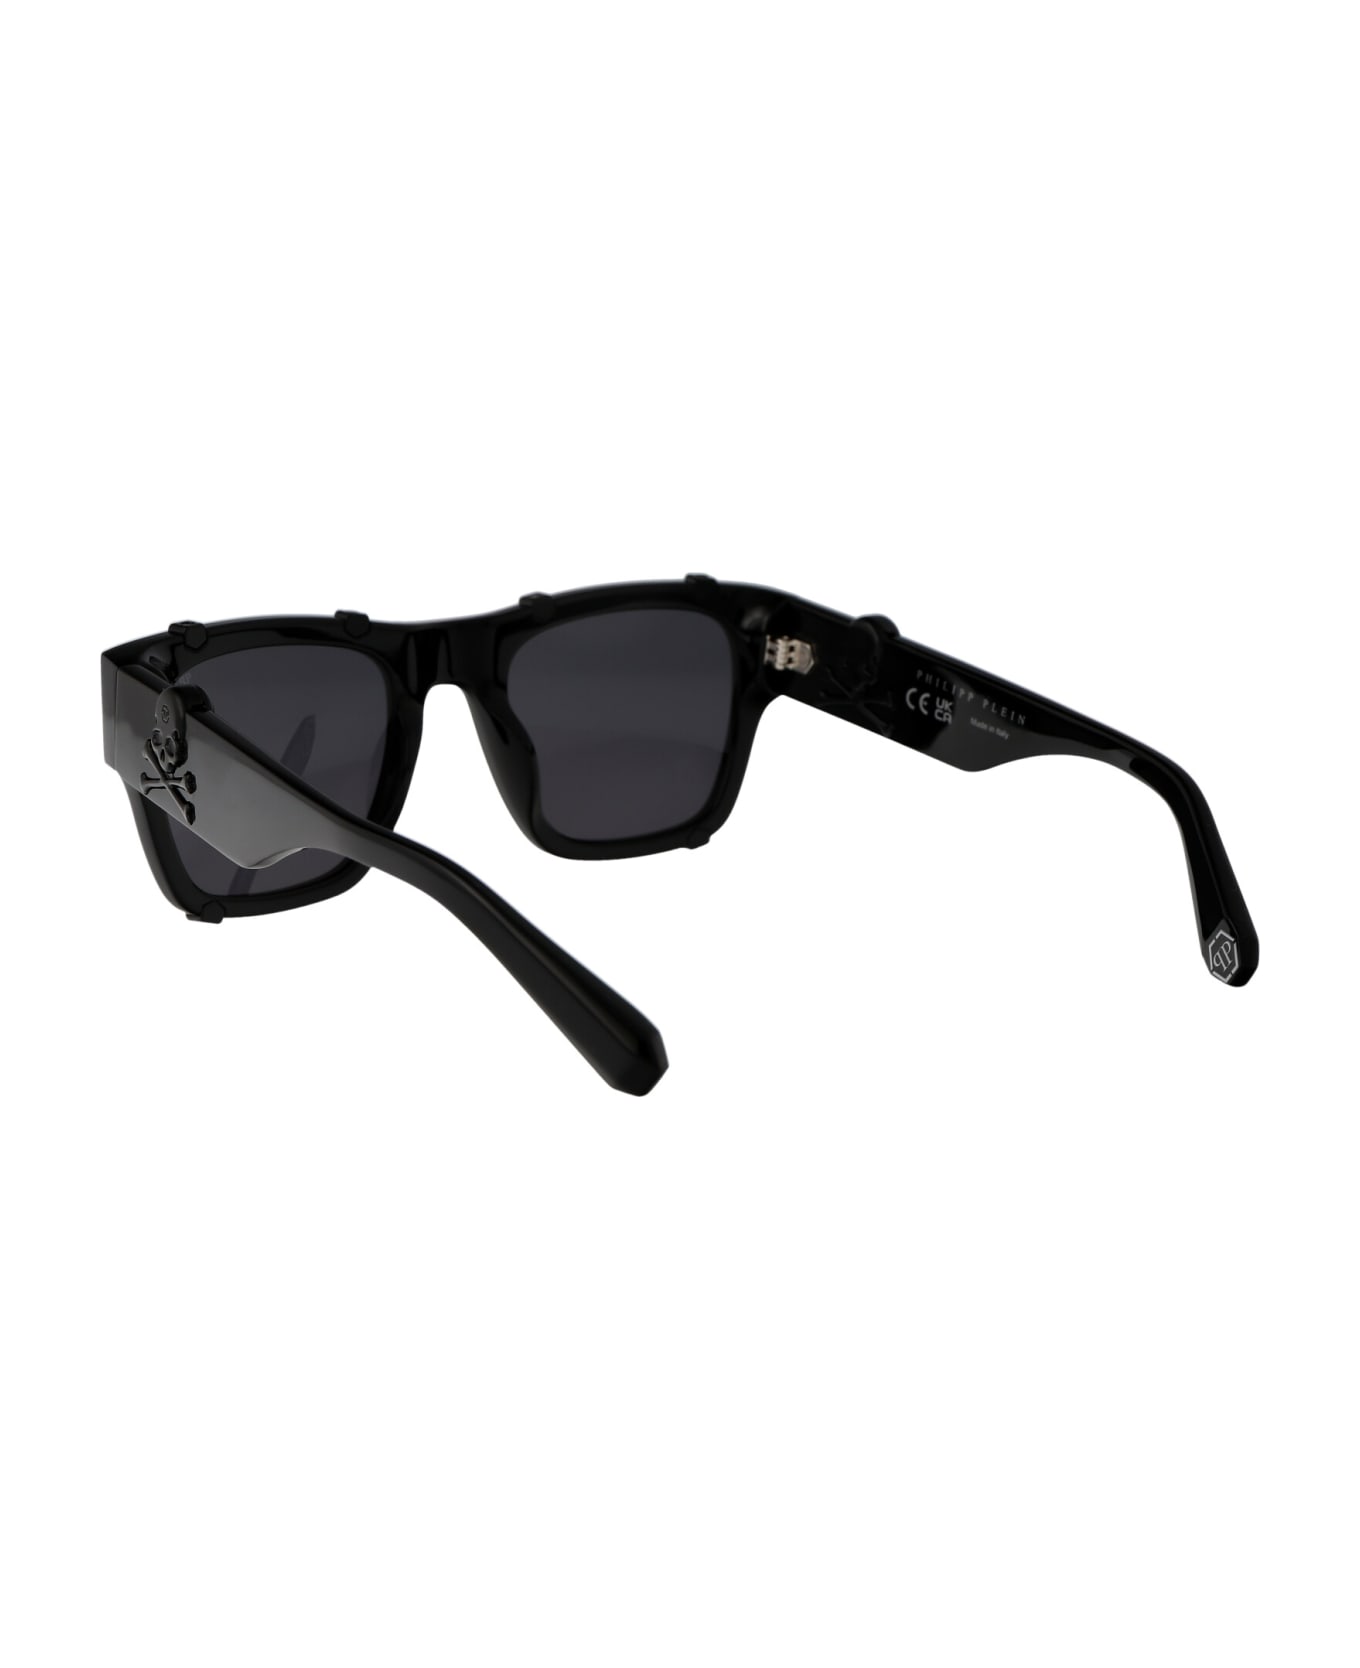 Philipp Plein Spp042v Sunglasses - 700V BLACK